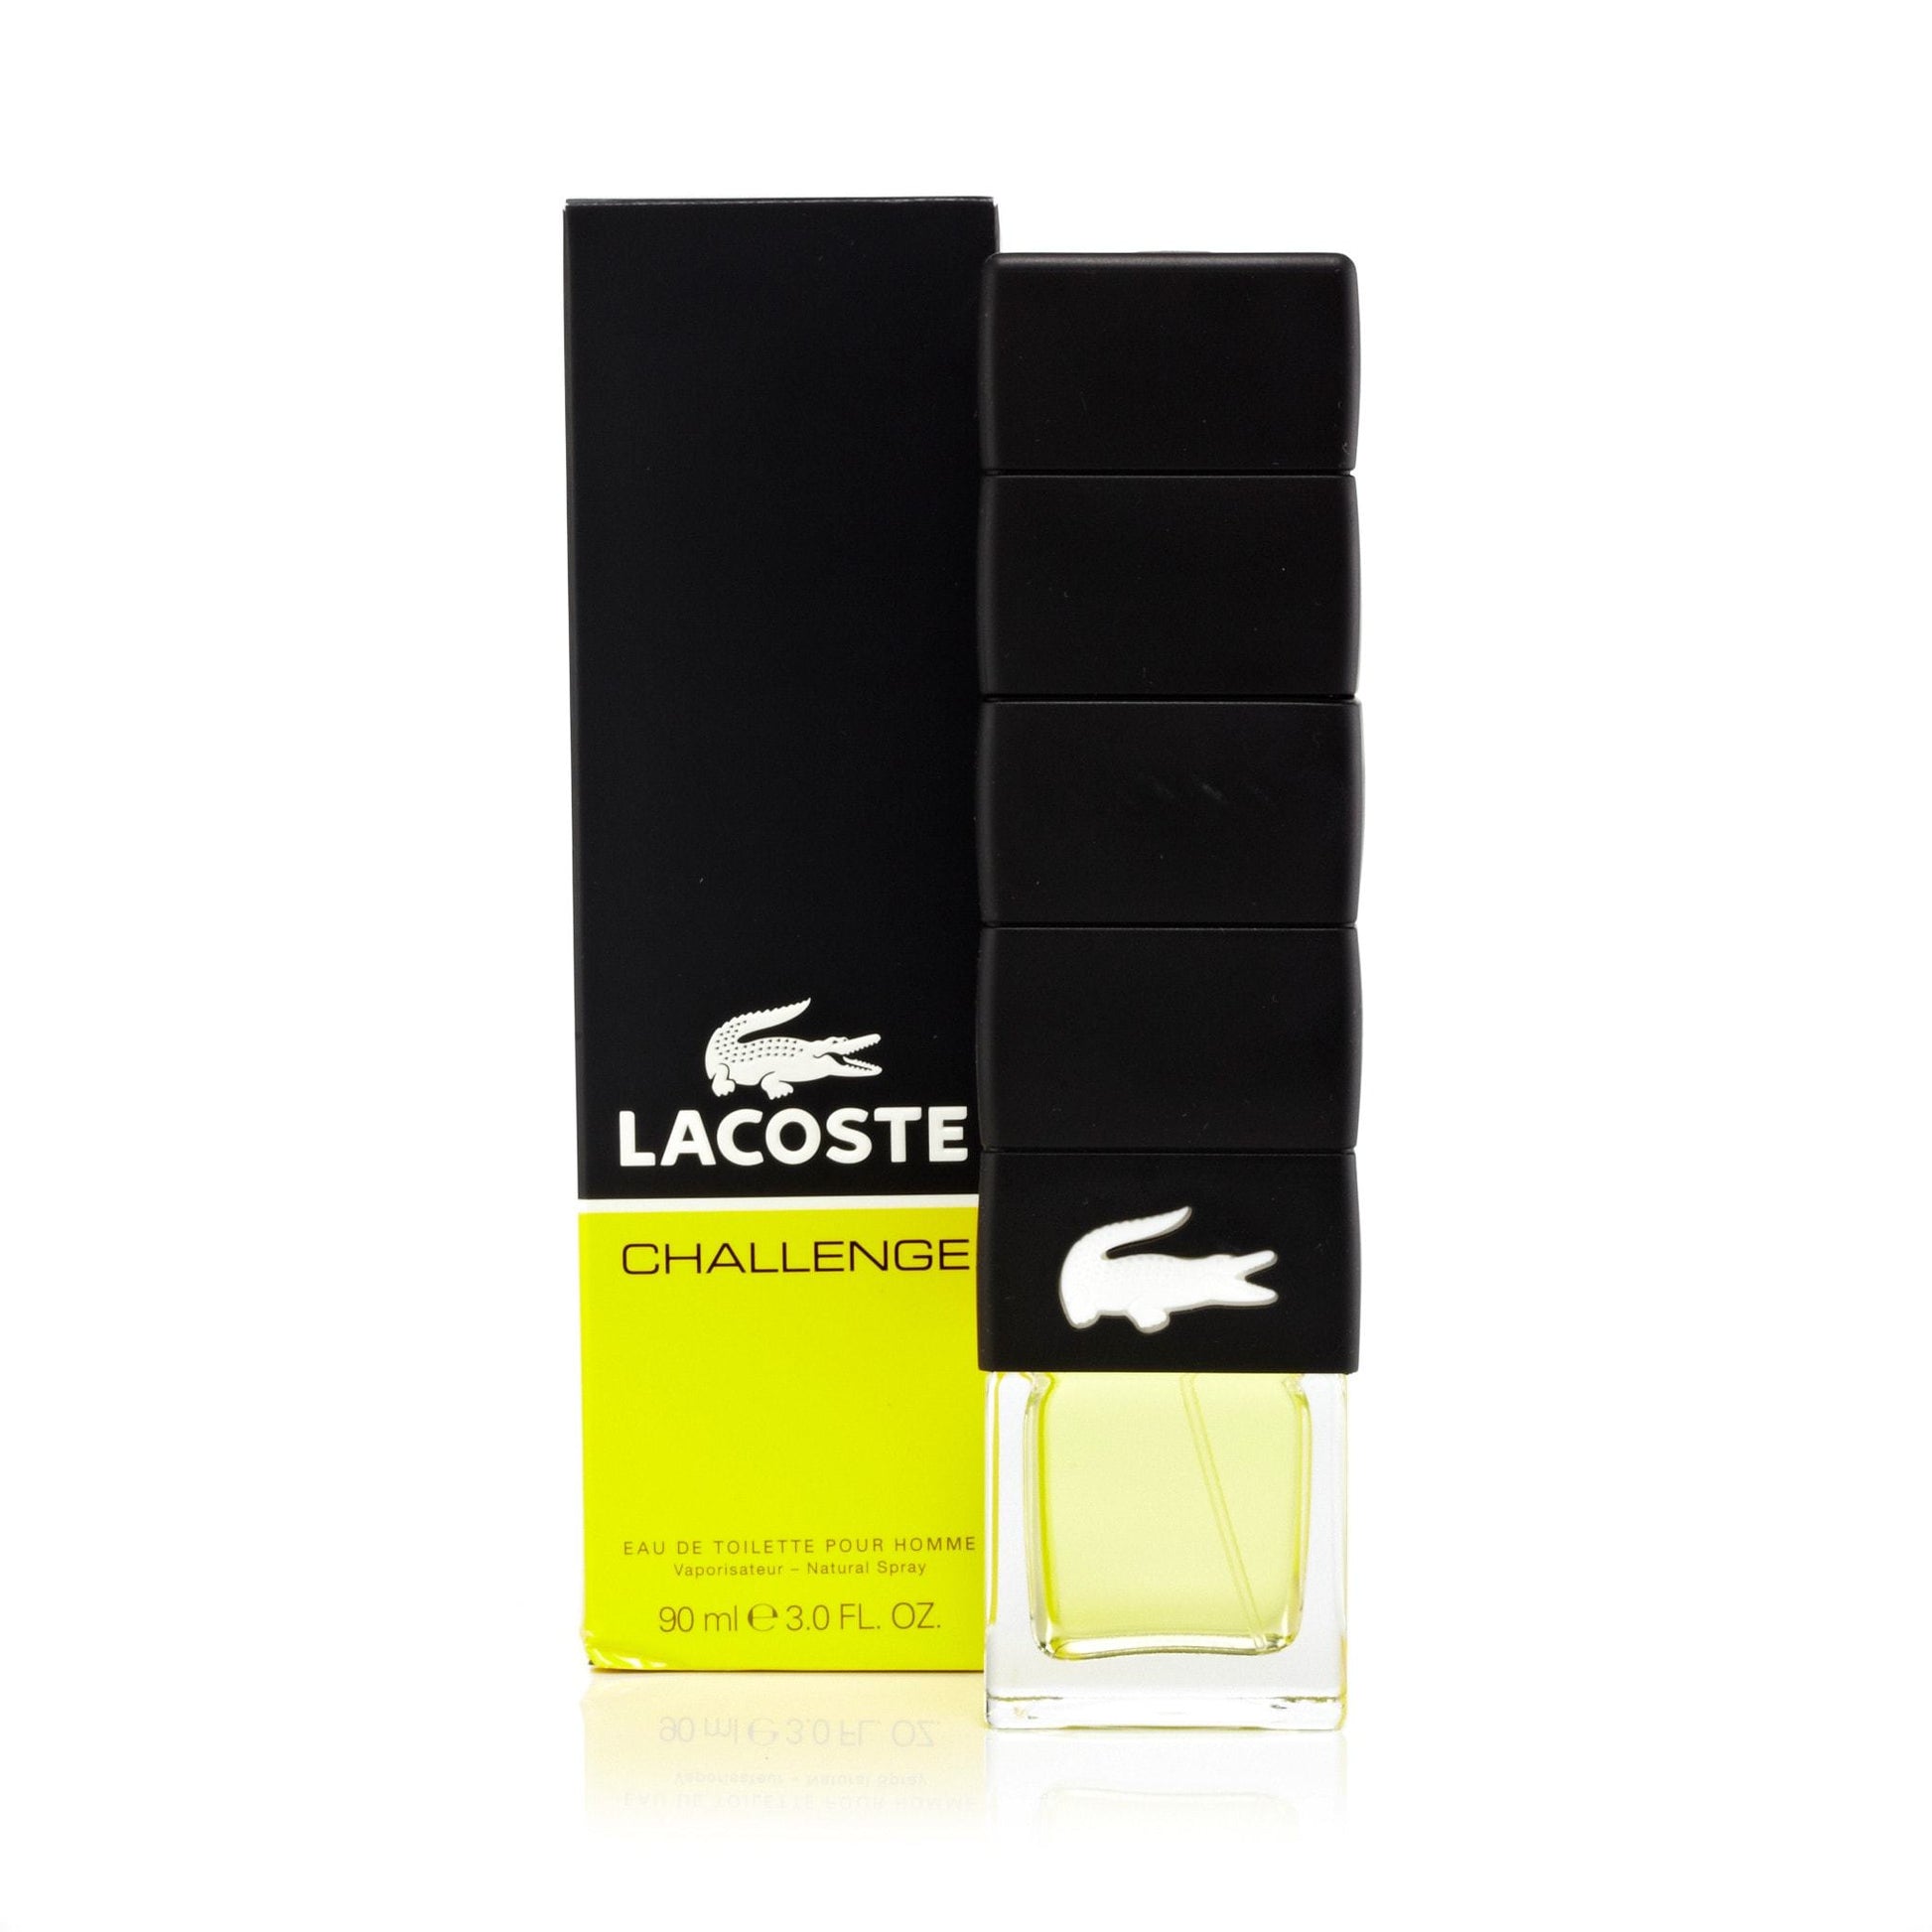 Challenge Eau de Toilette Spray for Men by Lacoste, Product image 4